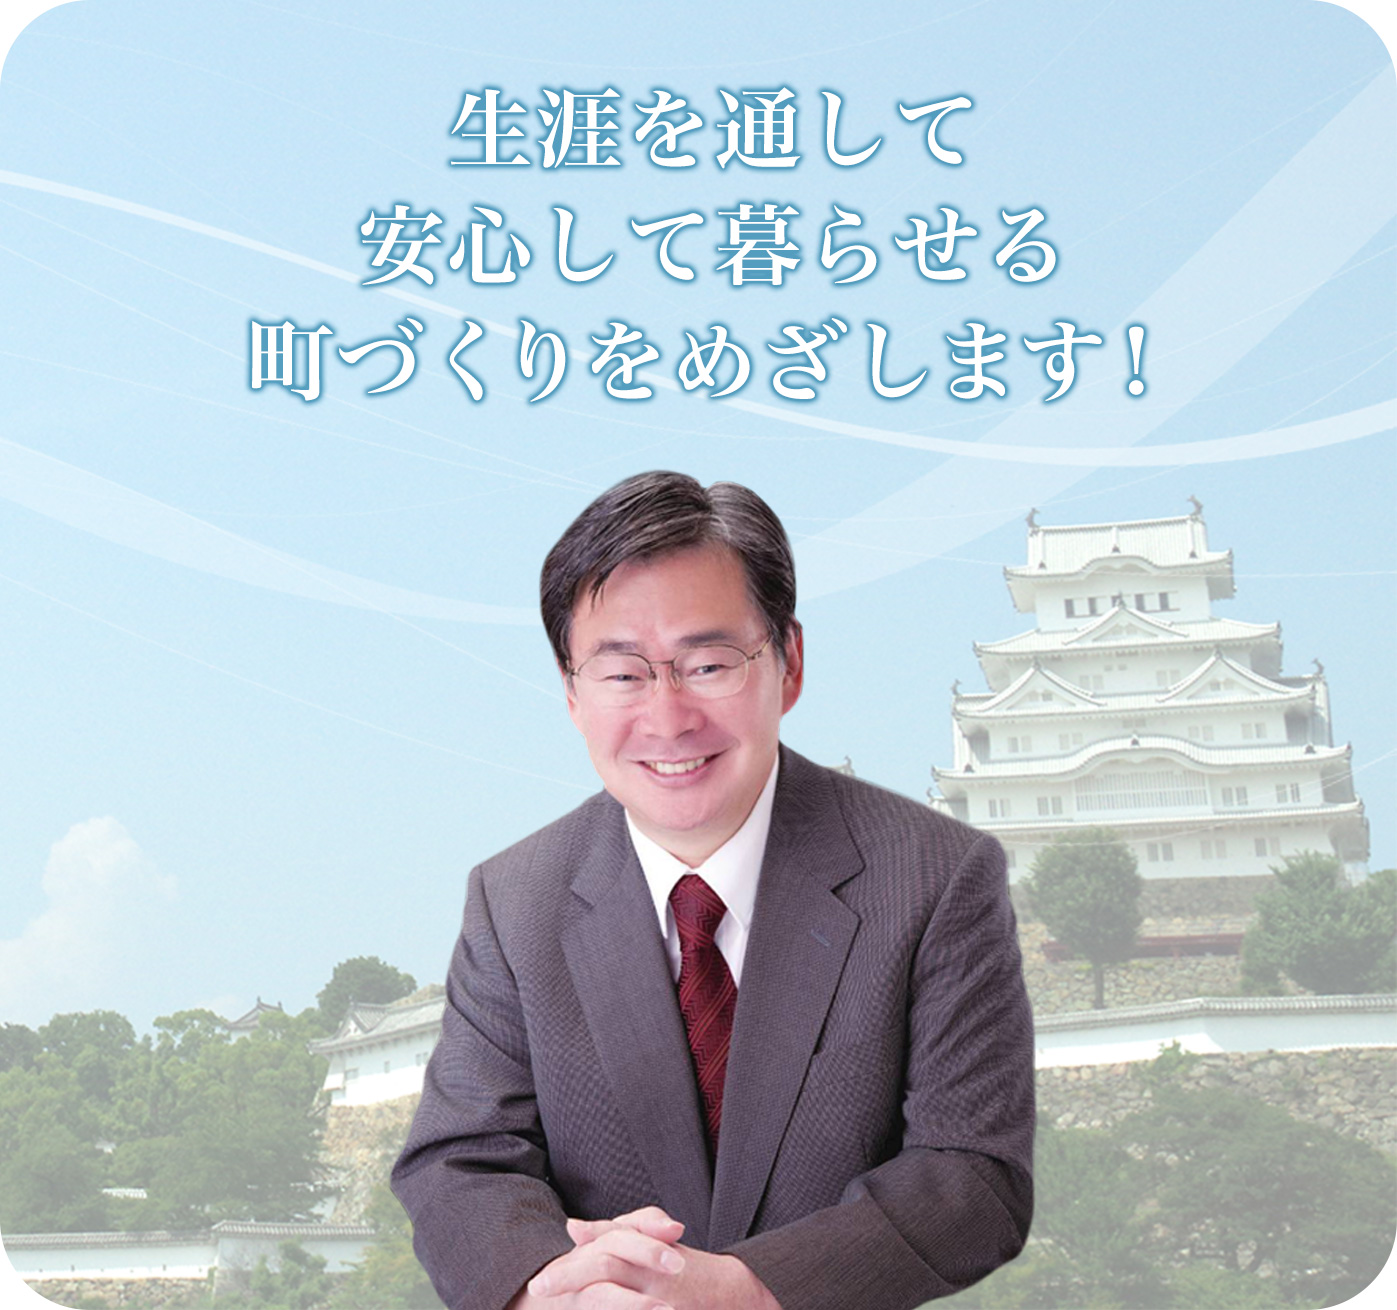 姫路市議会議員 宮本吉秀のオフィシャルサイト